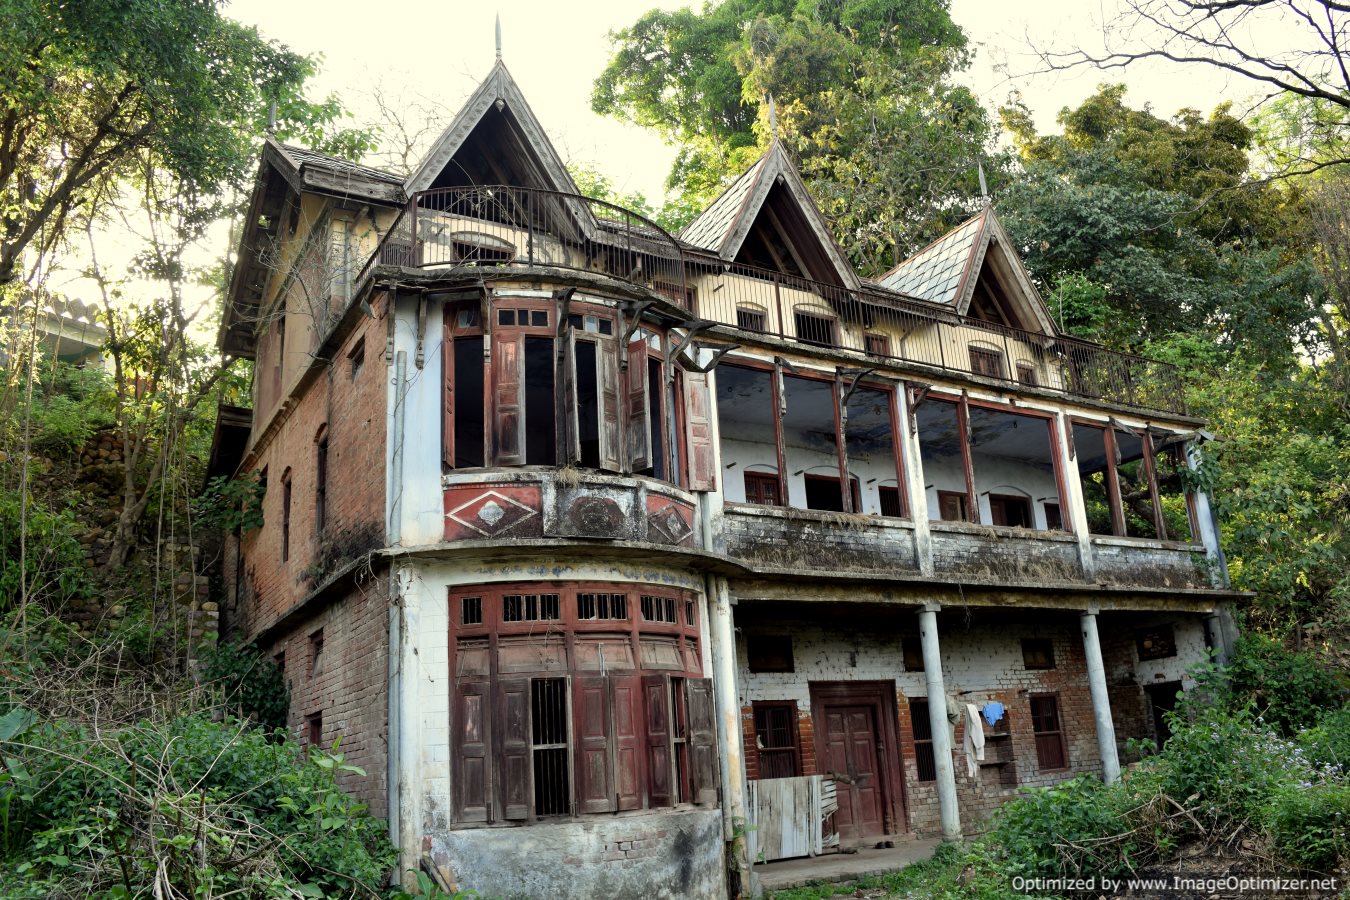 Heritage buildings now in complete ruins in Garli village